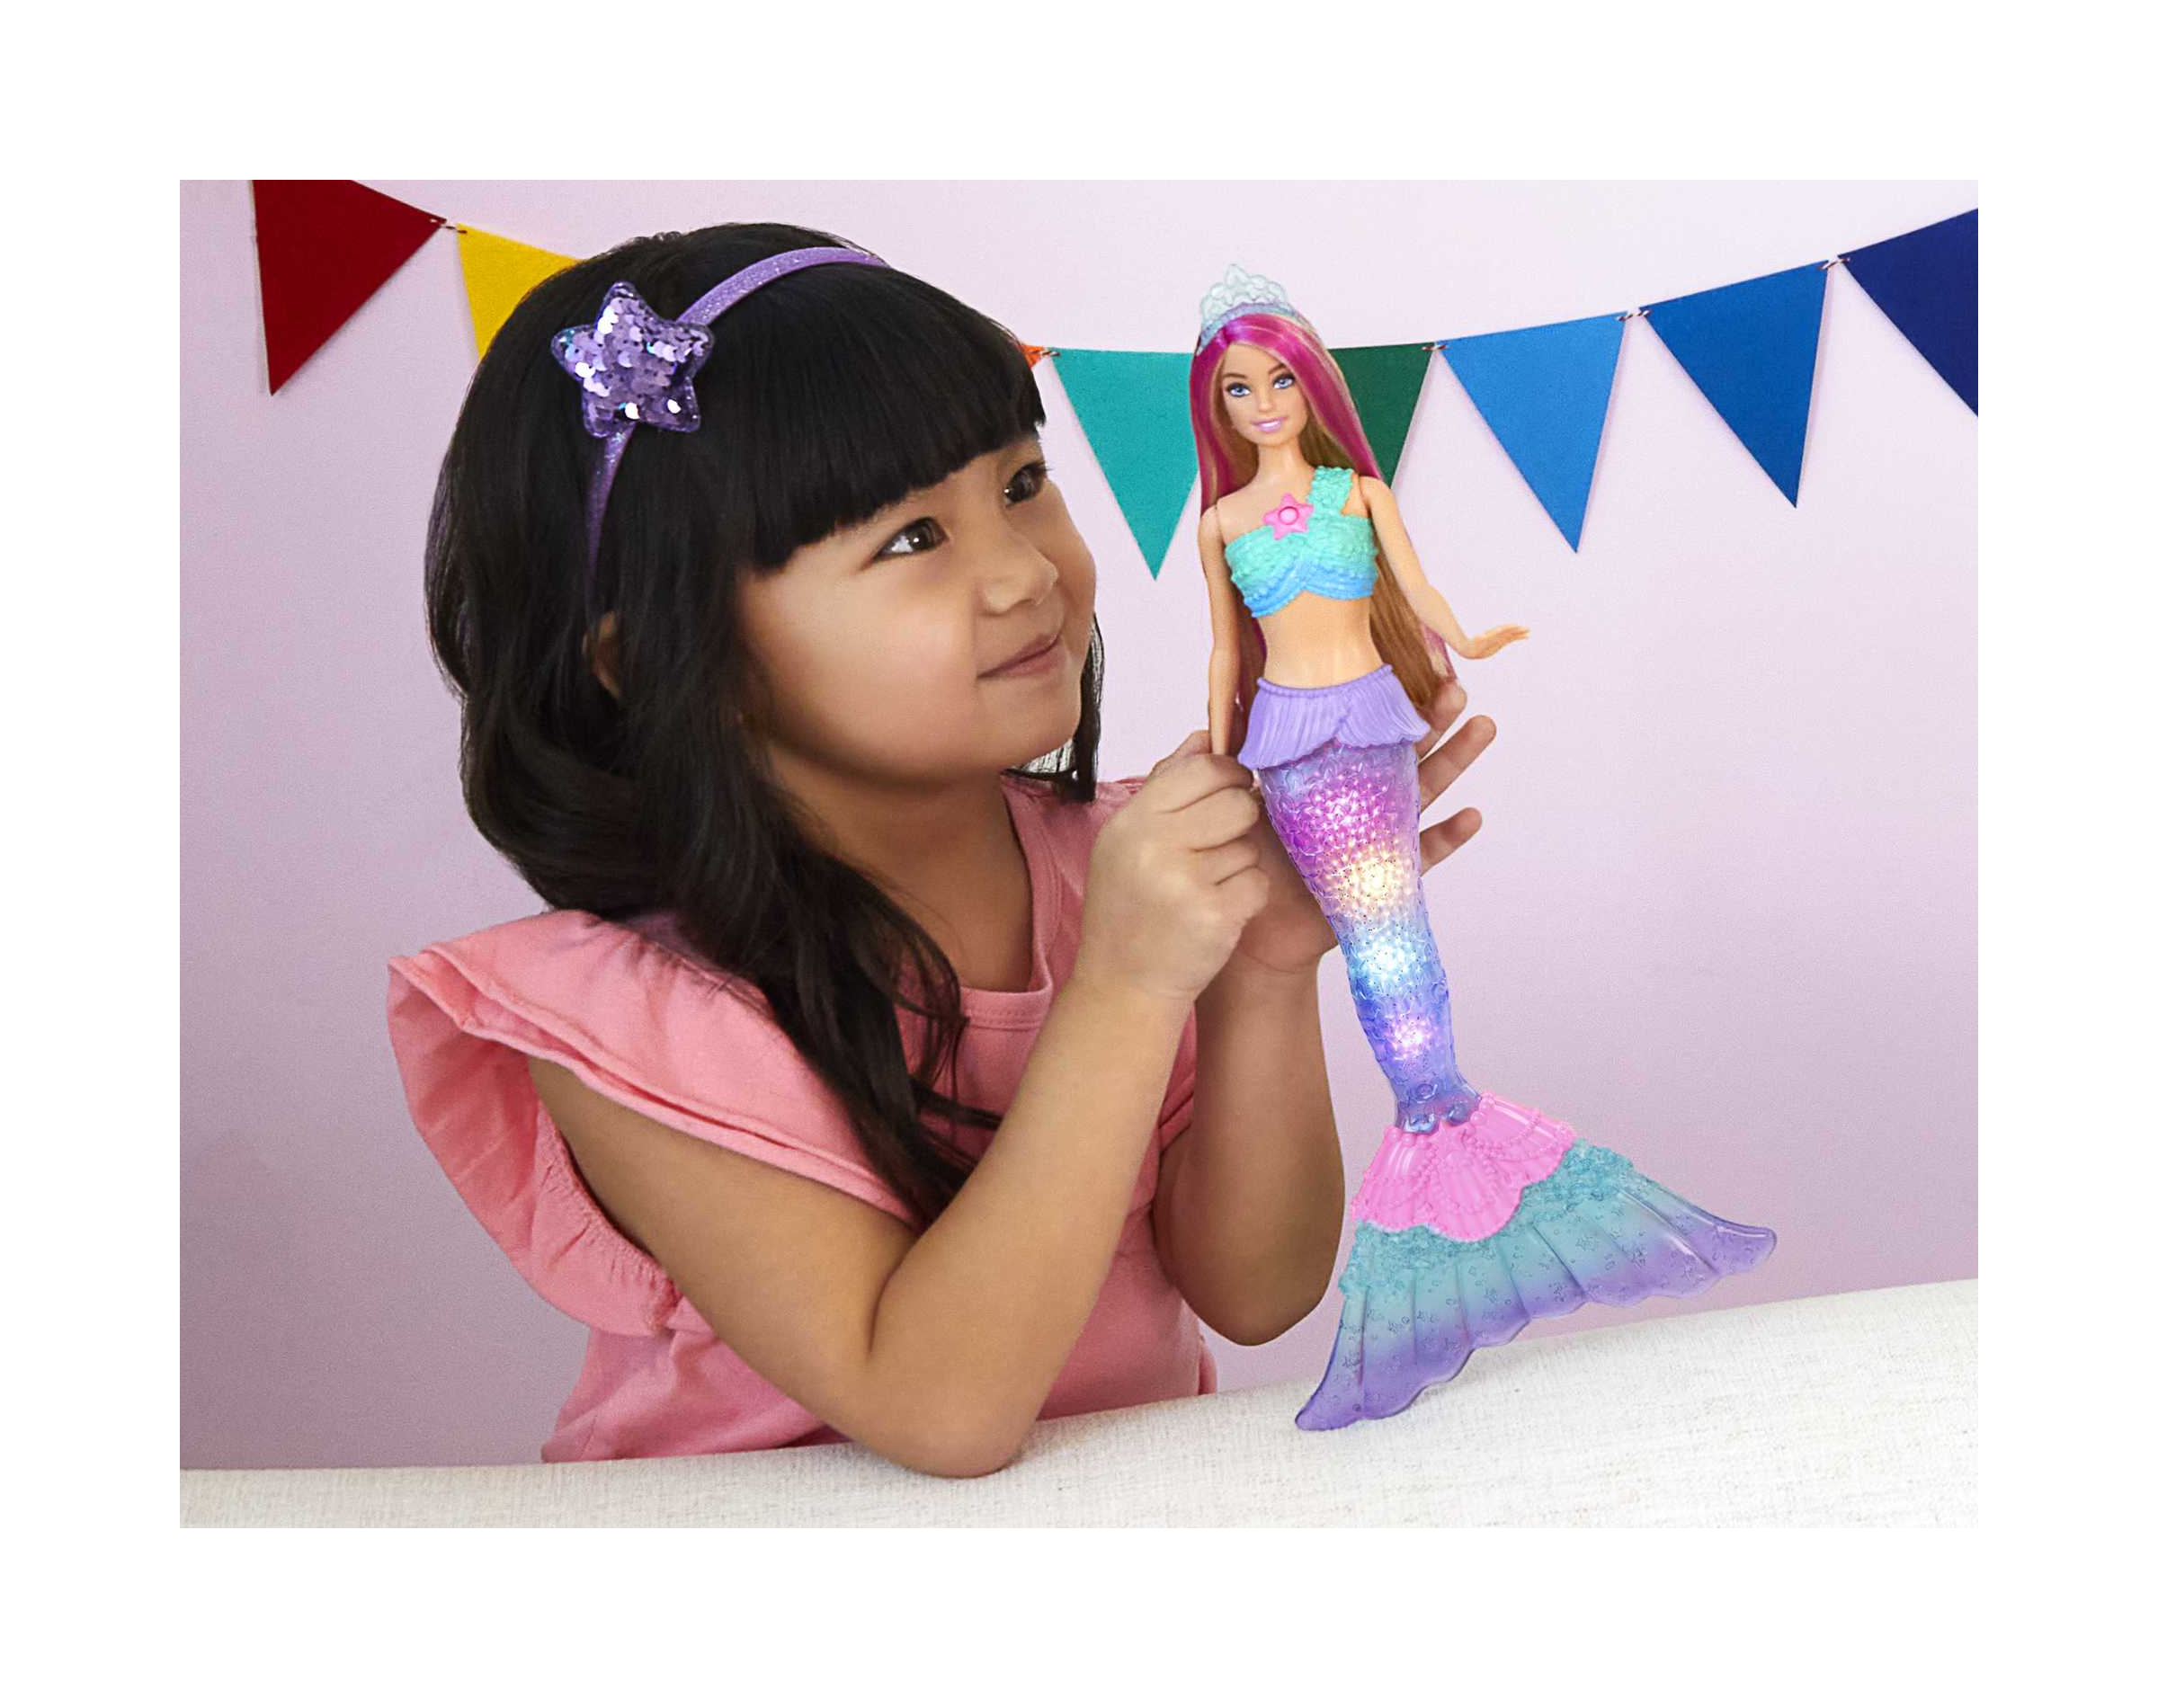 Barbie, dreamtopia sirena luci scintillanti bambola bionda con coda che si  illumina, luci che si attivano con acqua e capelli con ciocche rosa,  giocattolo per bambini 3+ anni - Toys Center